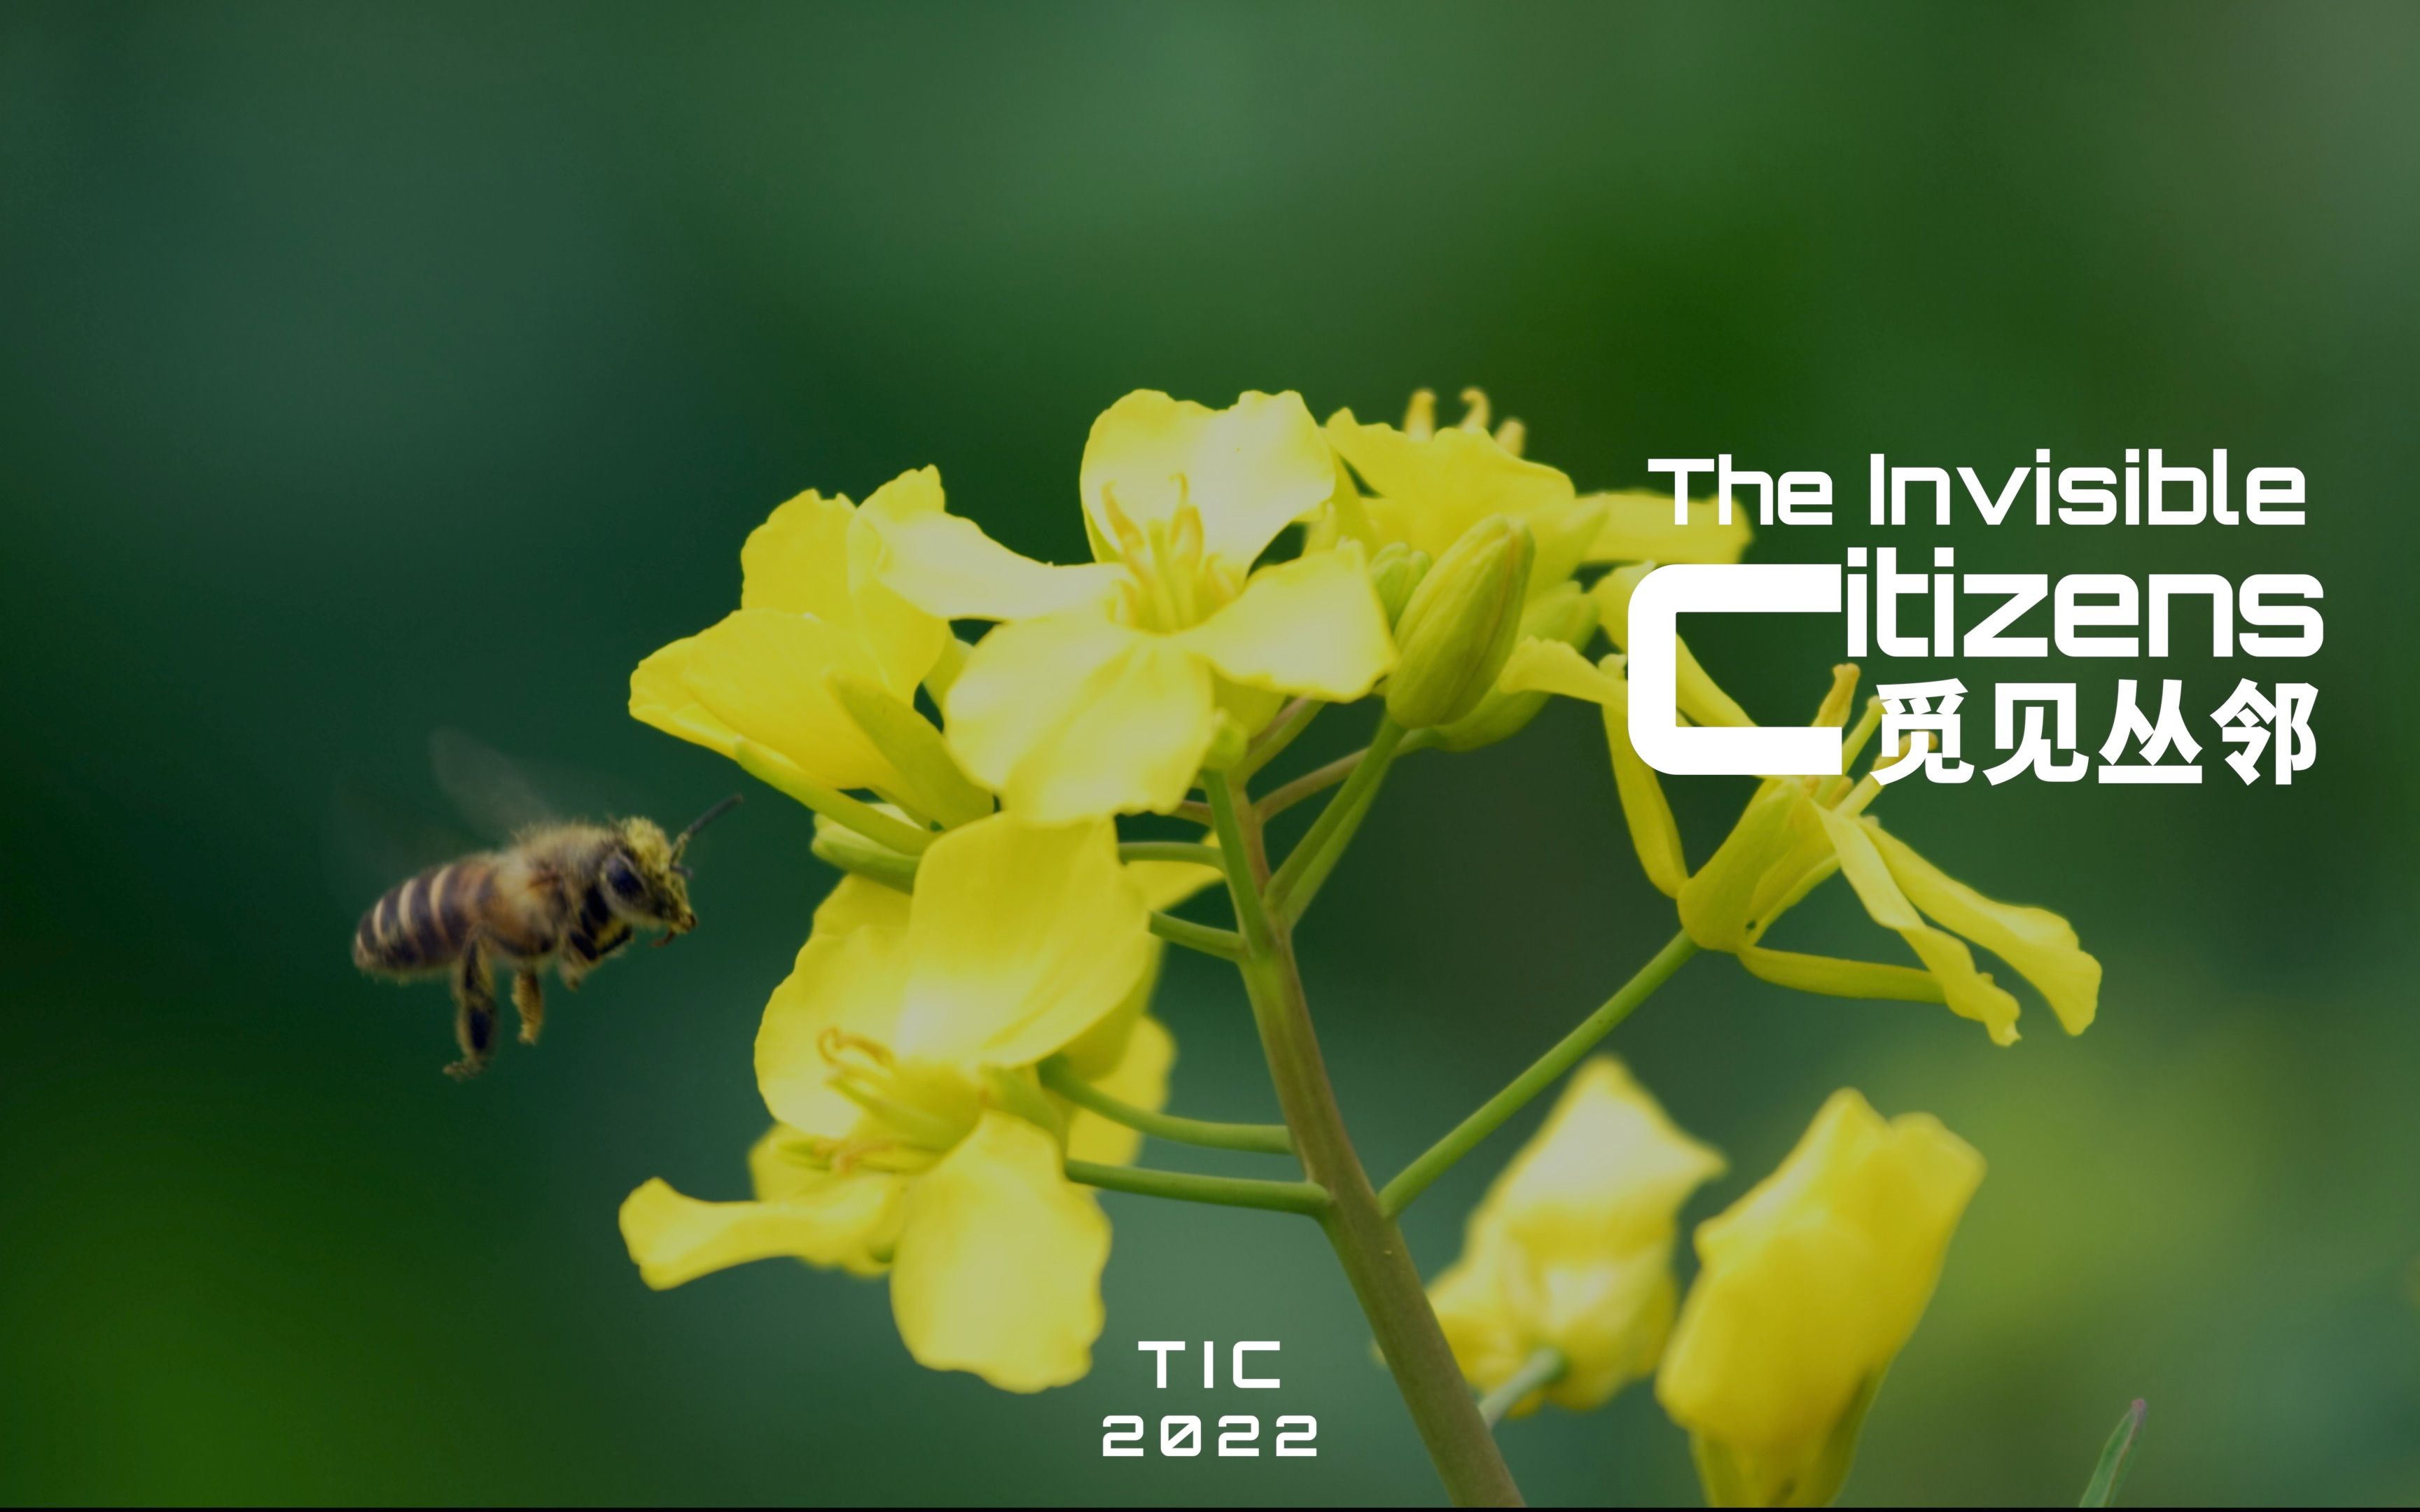 蜜蜂是如何定位花朵位置的-蜜蜂的视觉、嗅觉和通讯|觅见丛邻The Invisible Citizens